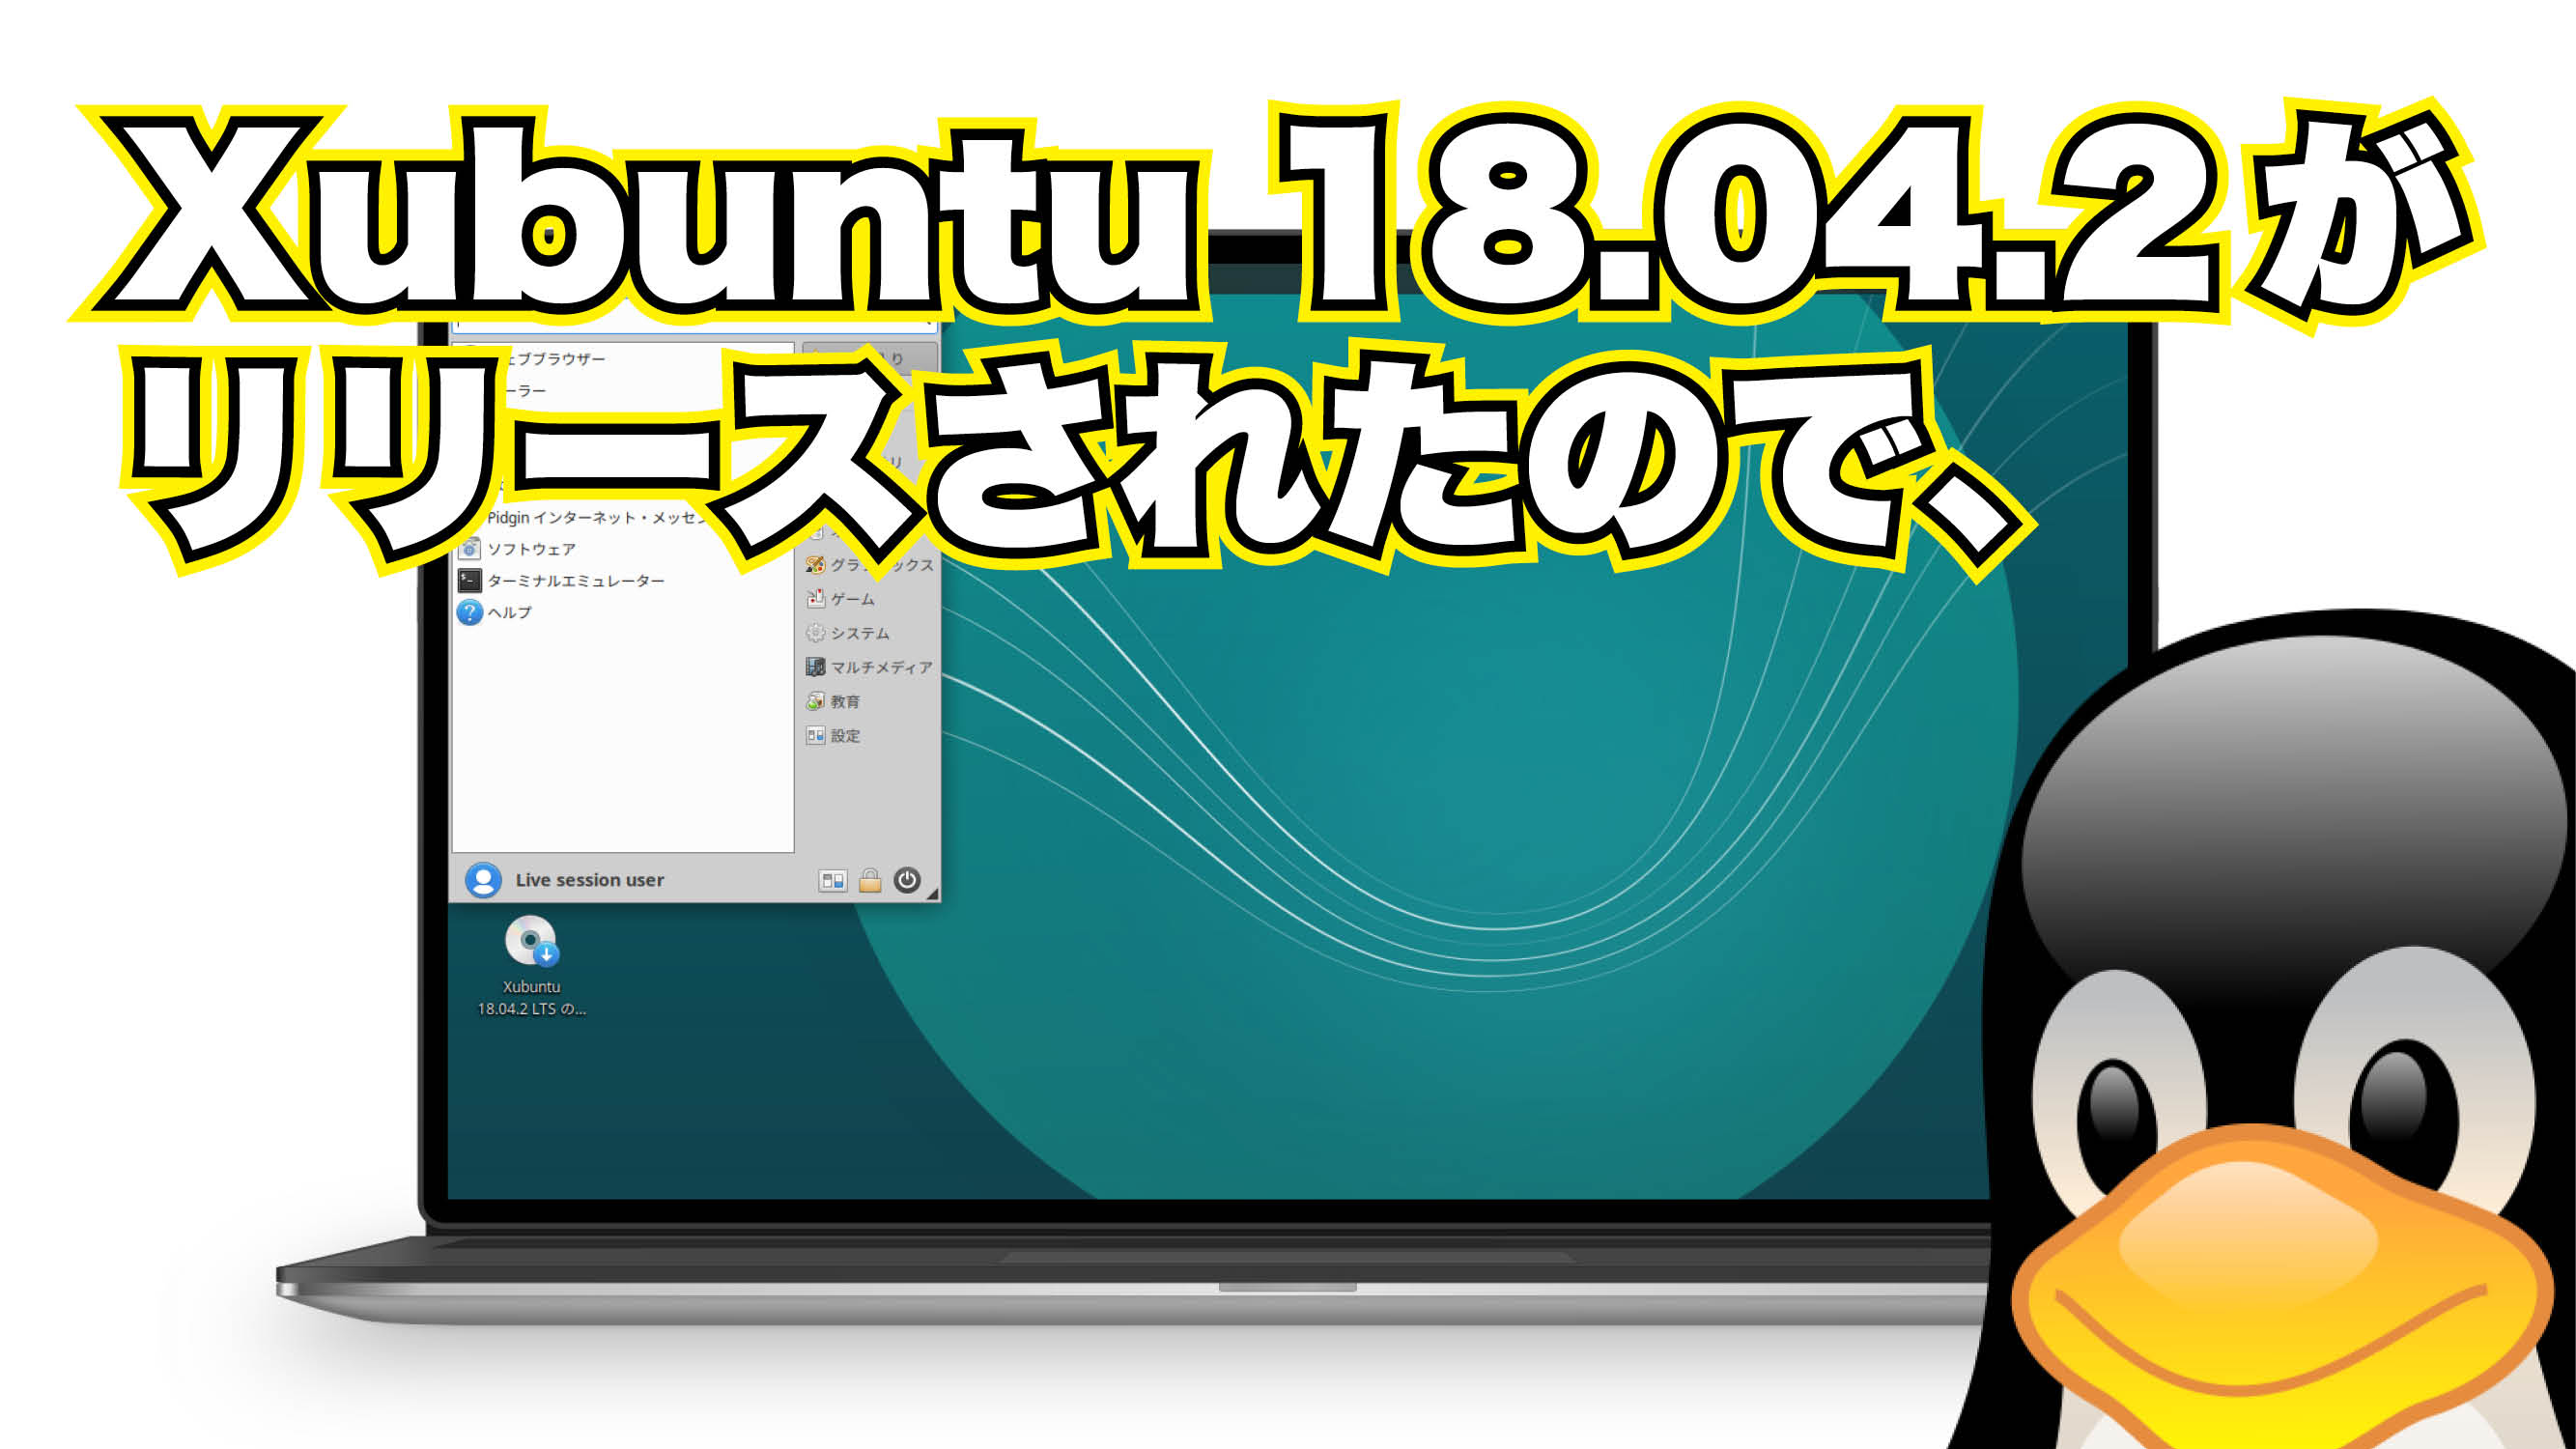 Xubuntu 18.04.2 がリリースされたので、